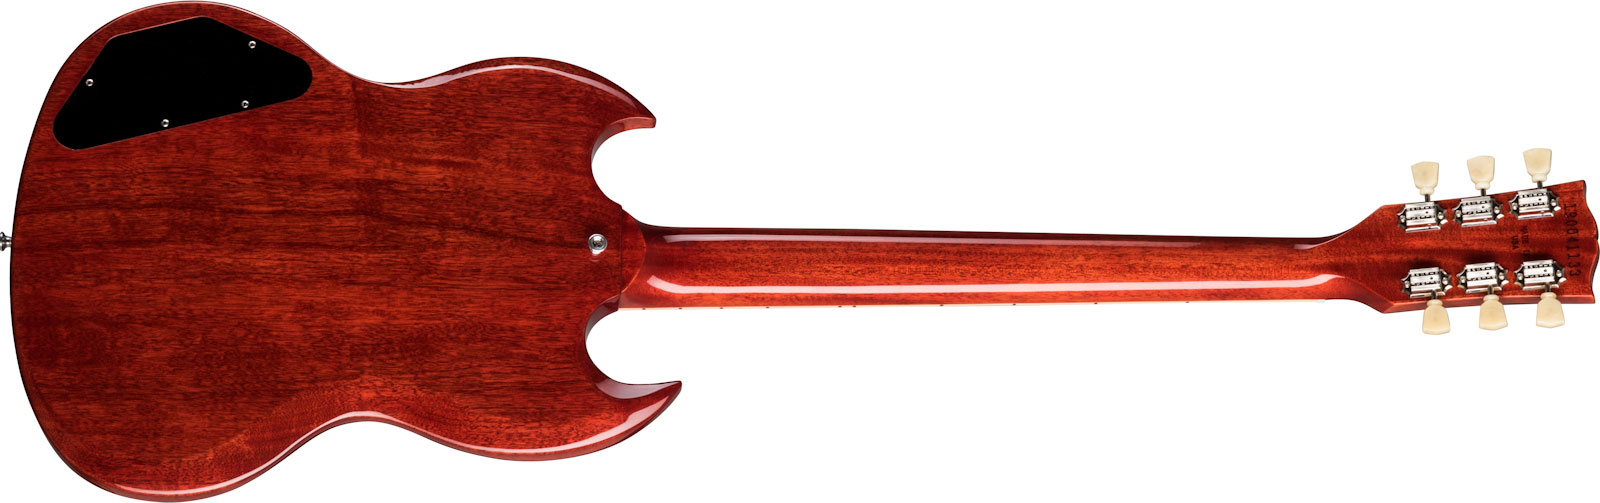 Gibson Sg Standard '61 Maestro Vibrola Original 2h Trem Rw - Retro-Rock-E-Gitarre - Variation 1